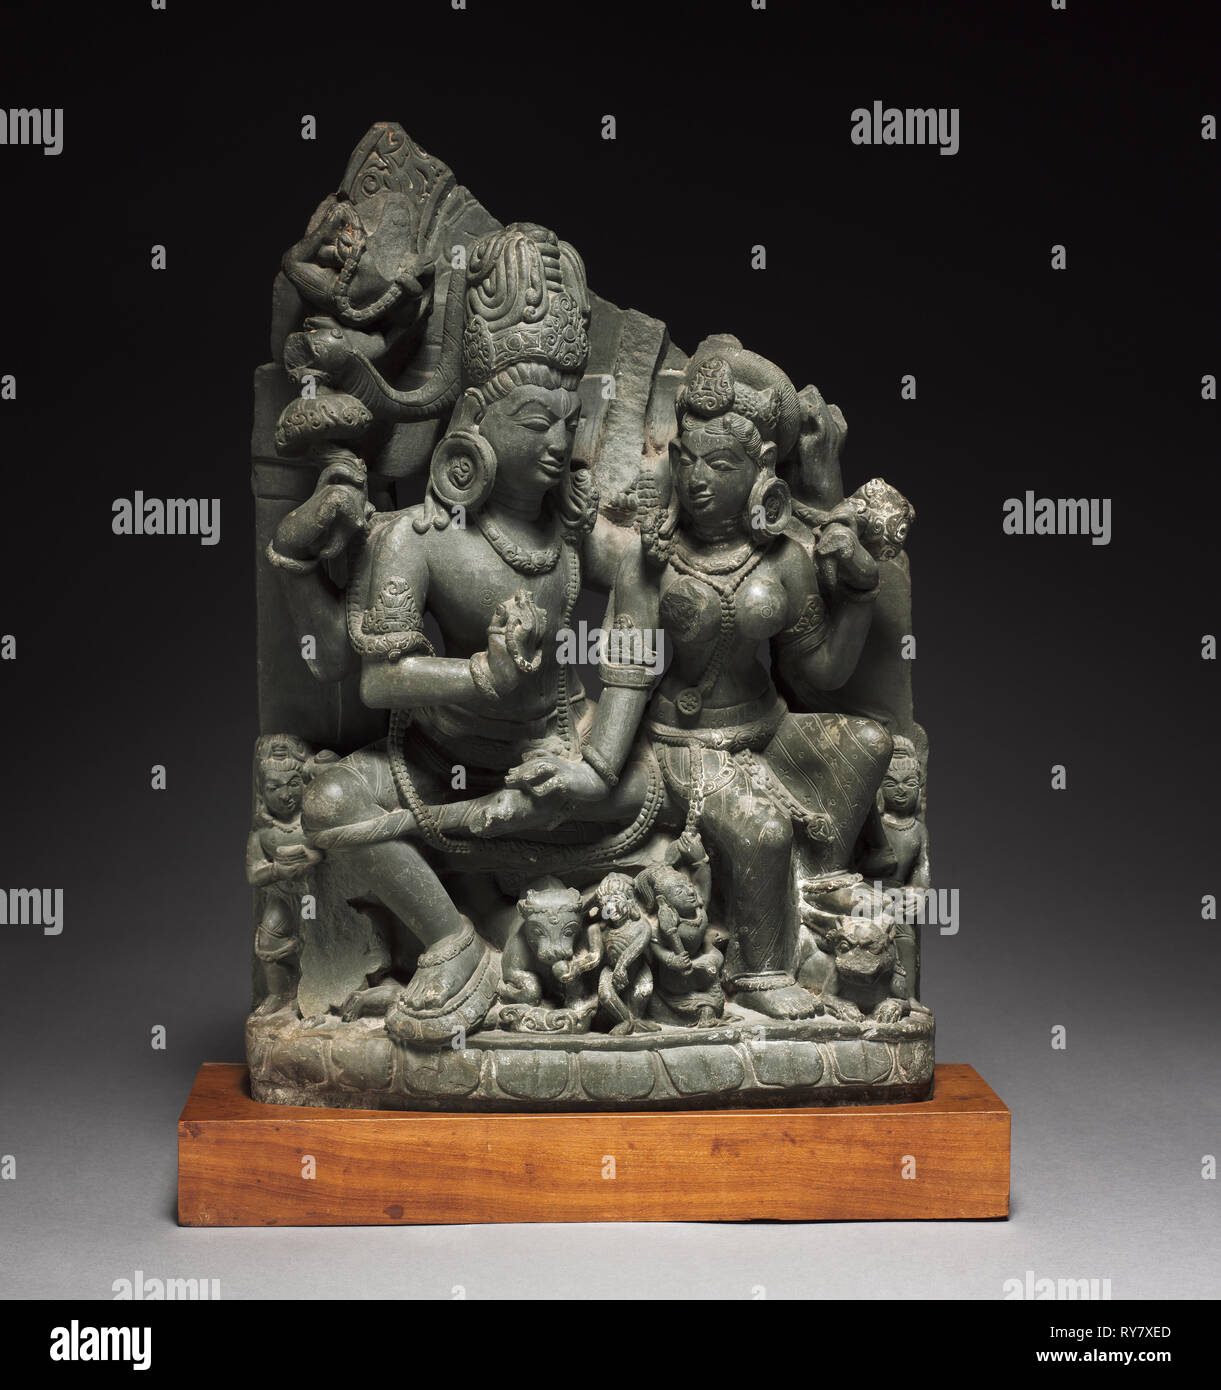 Shiva und Parvati (Uma-Mahesvara), 900 s. Nordindien, Uttaranchal, Almoral, 10. Jahrhundert. Grünlich-grauer Schiefer; insgesamt: 48 x 34 x 14,5 cm (18 7/8 x 13 3/8 x 5 11/16 in Stockfoto